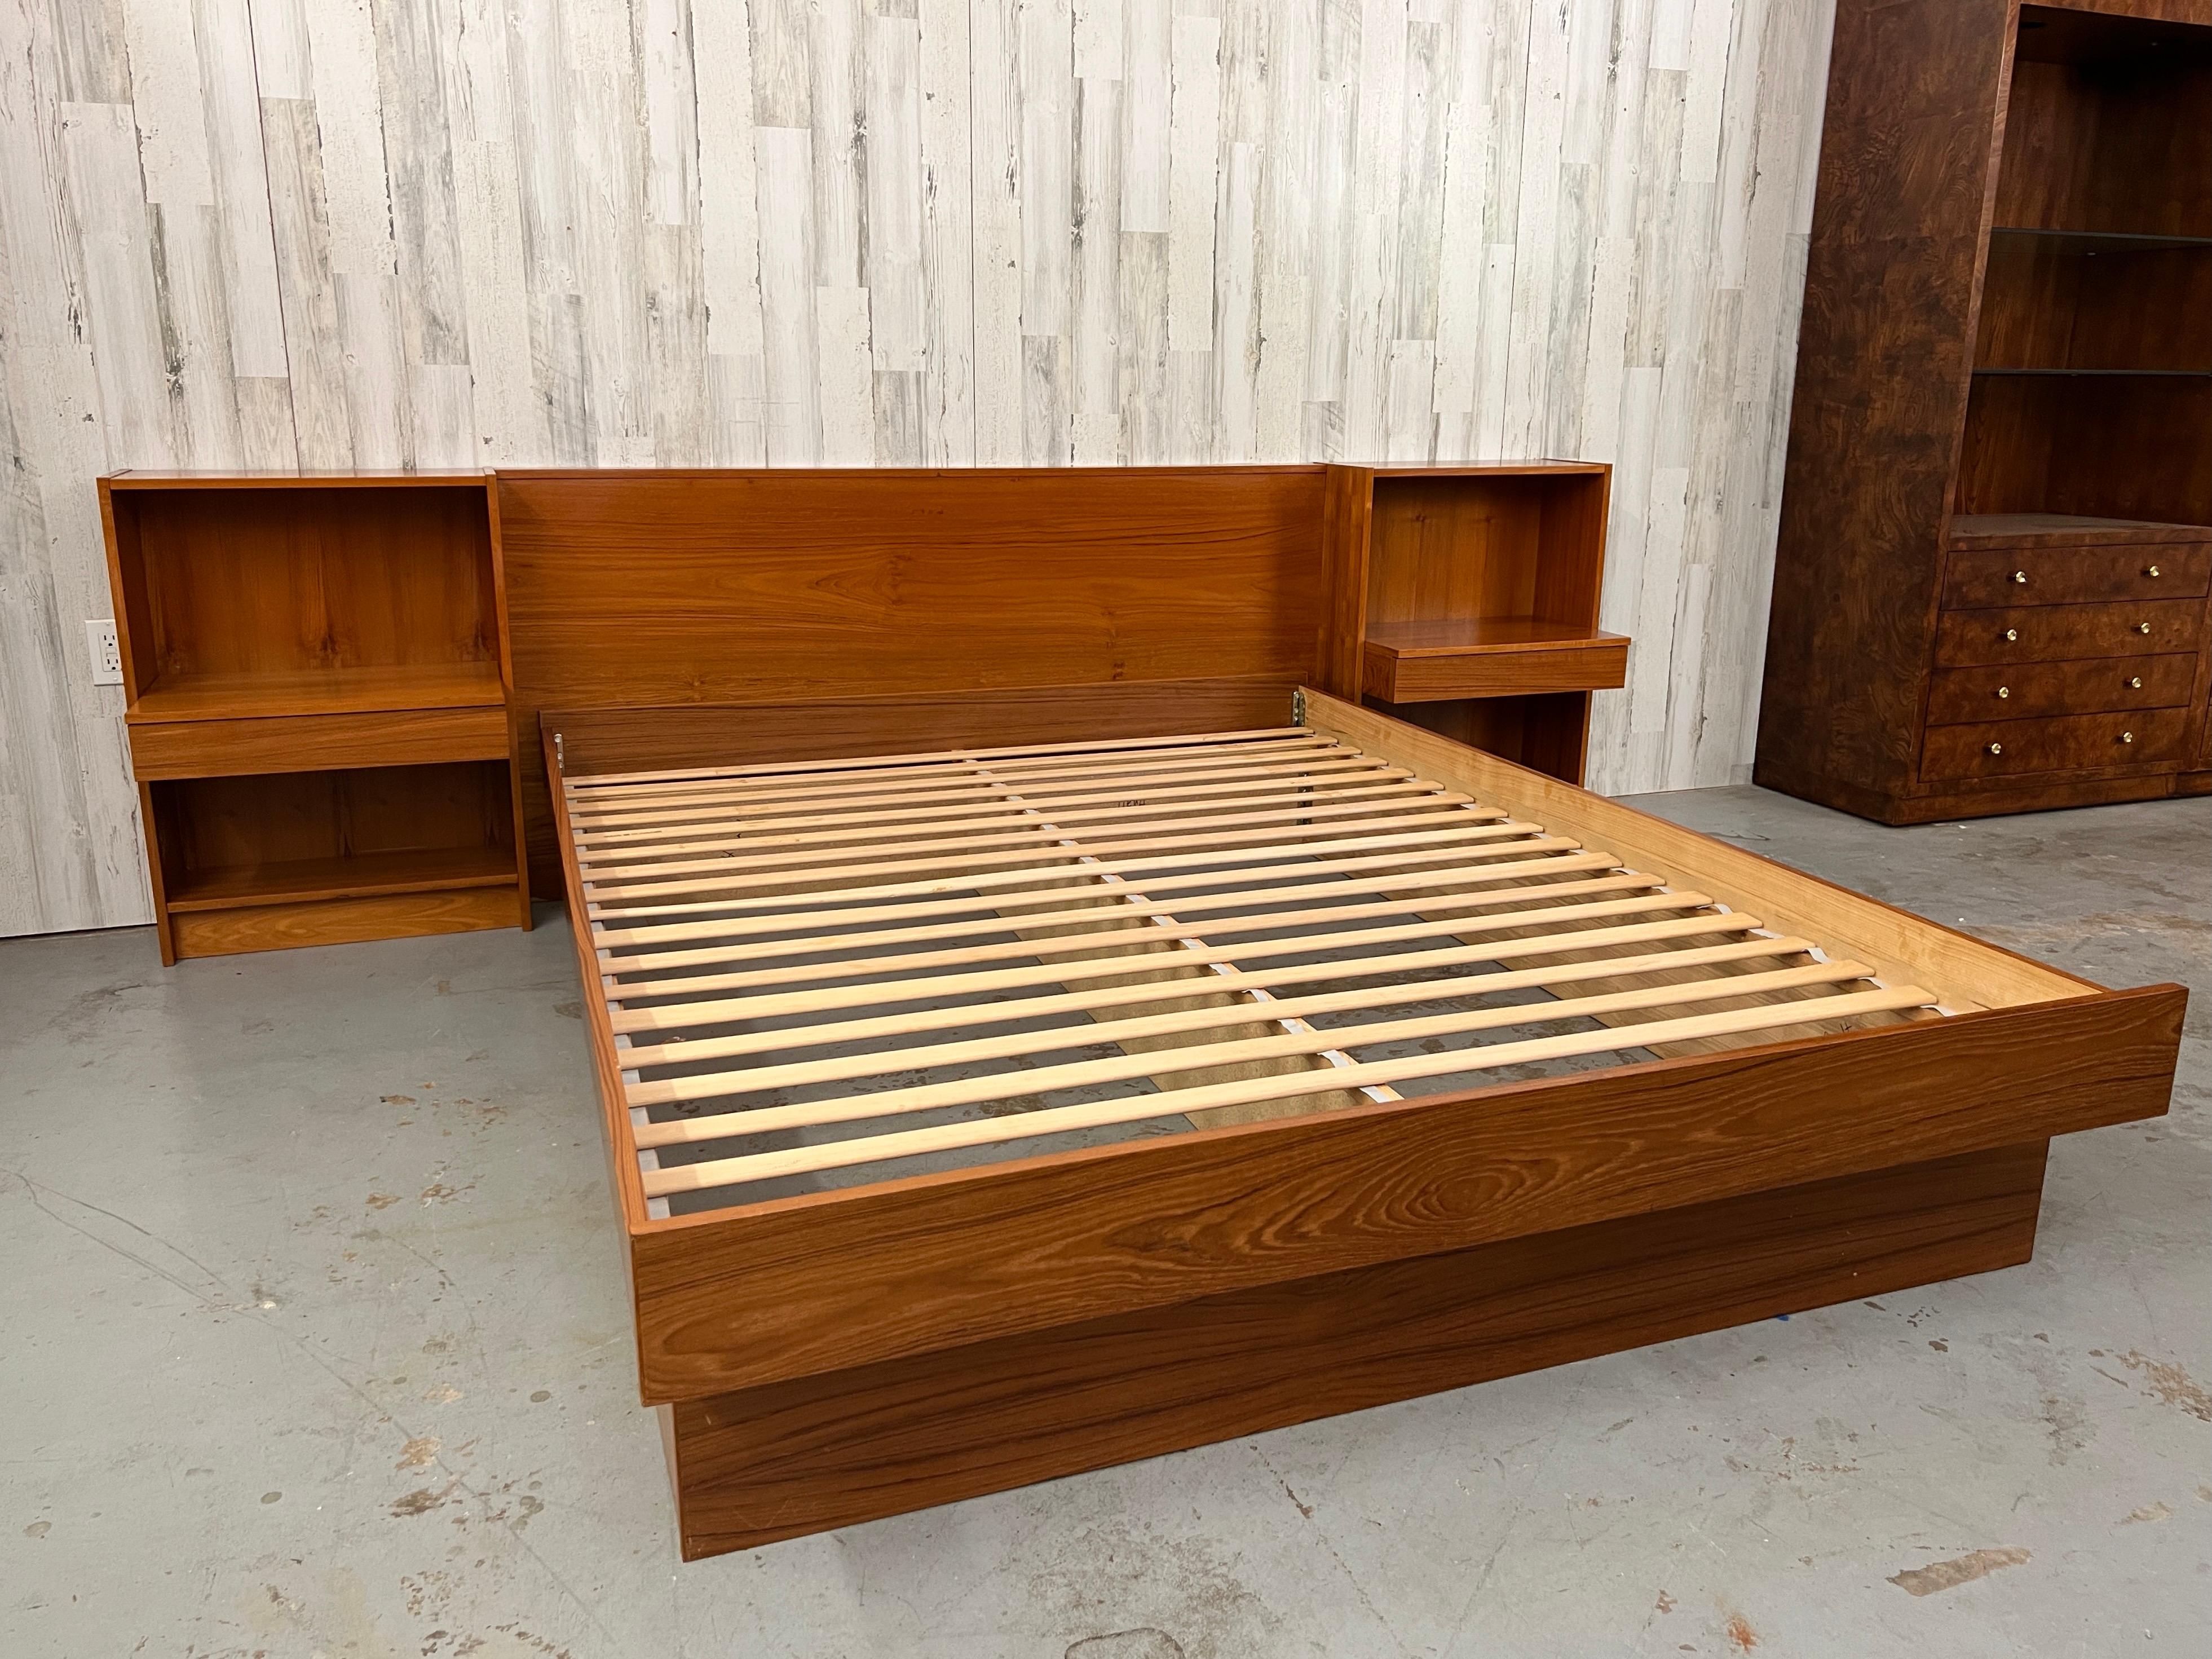 Veneer Danish Modern Platform Bed & Nightstands- Queen Size